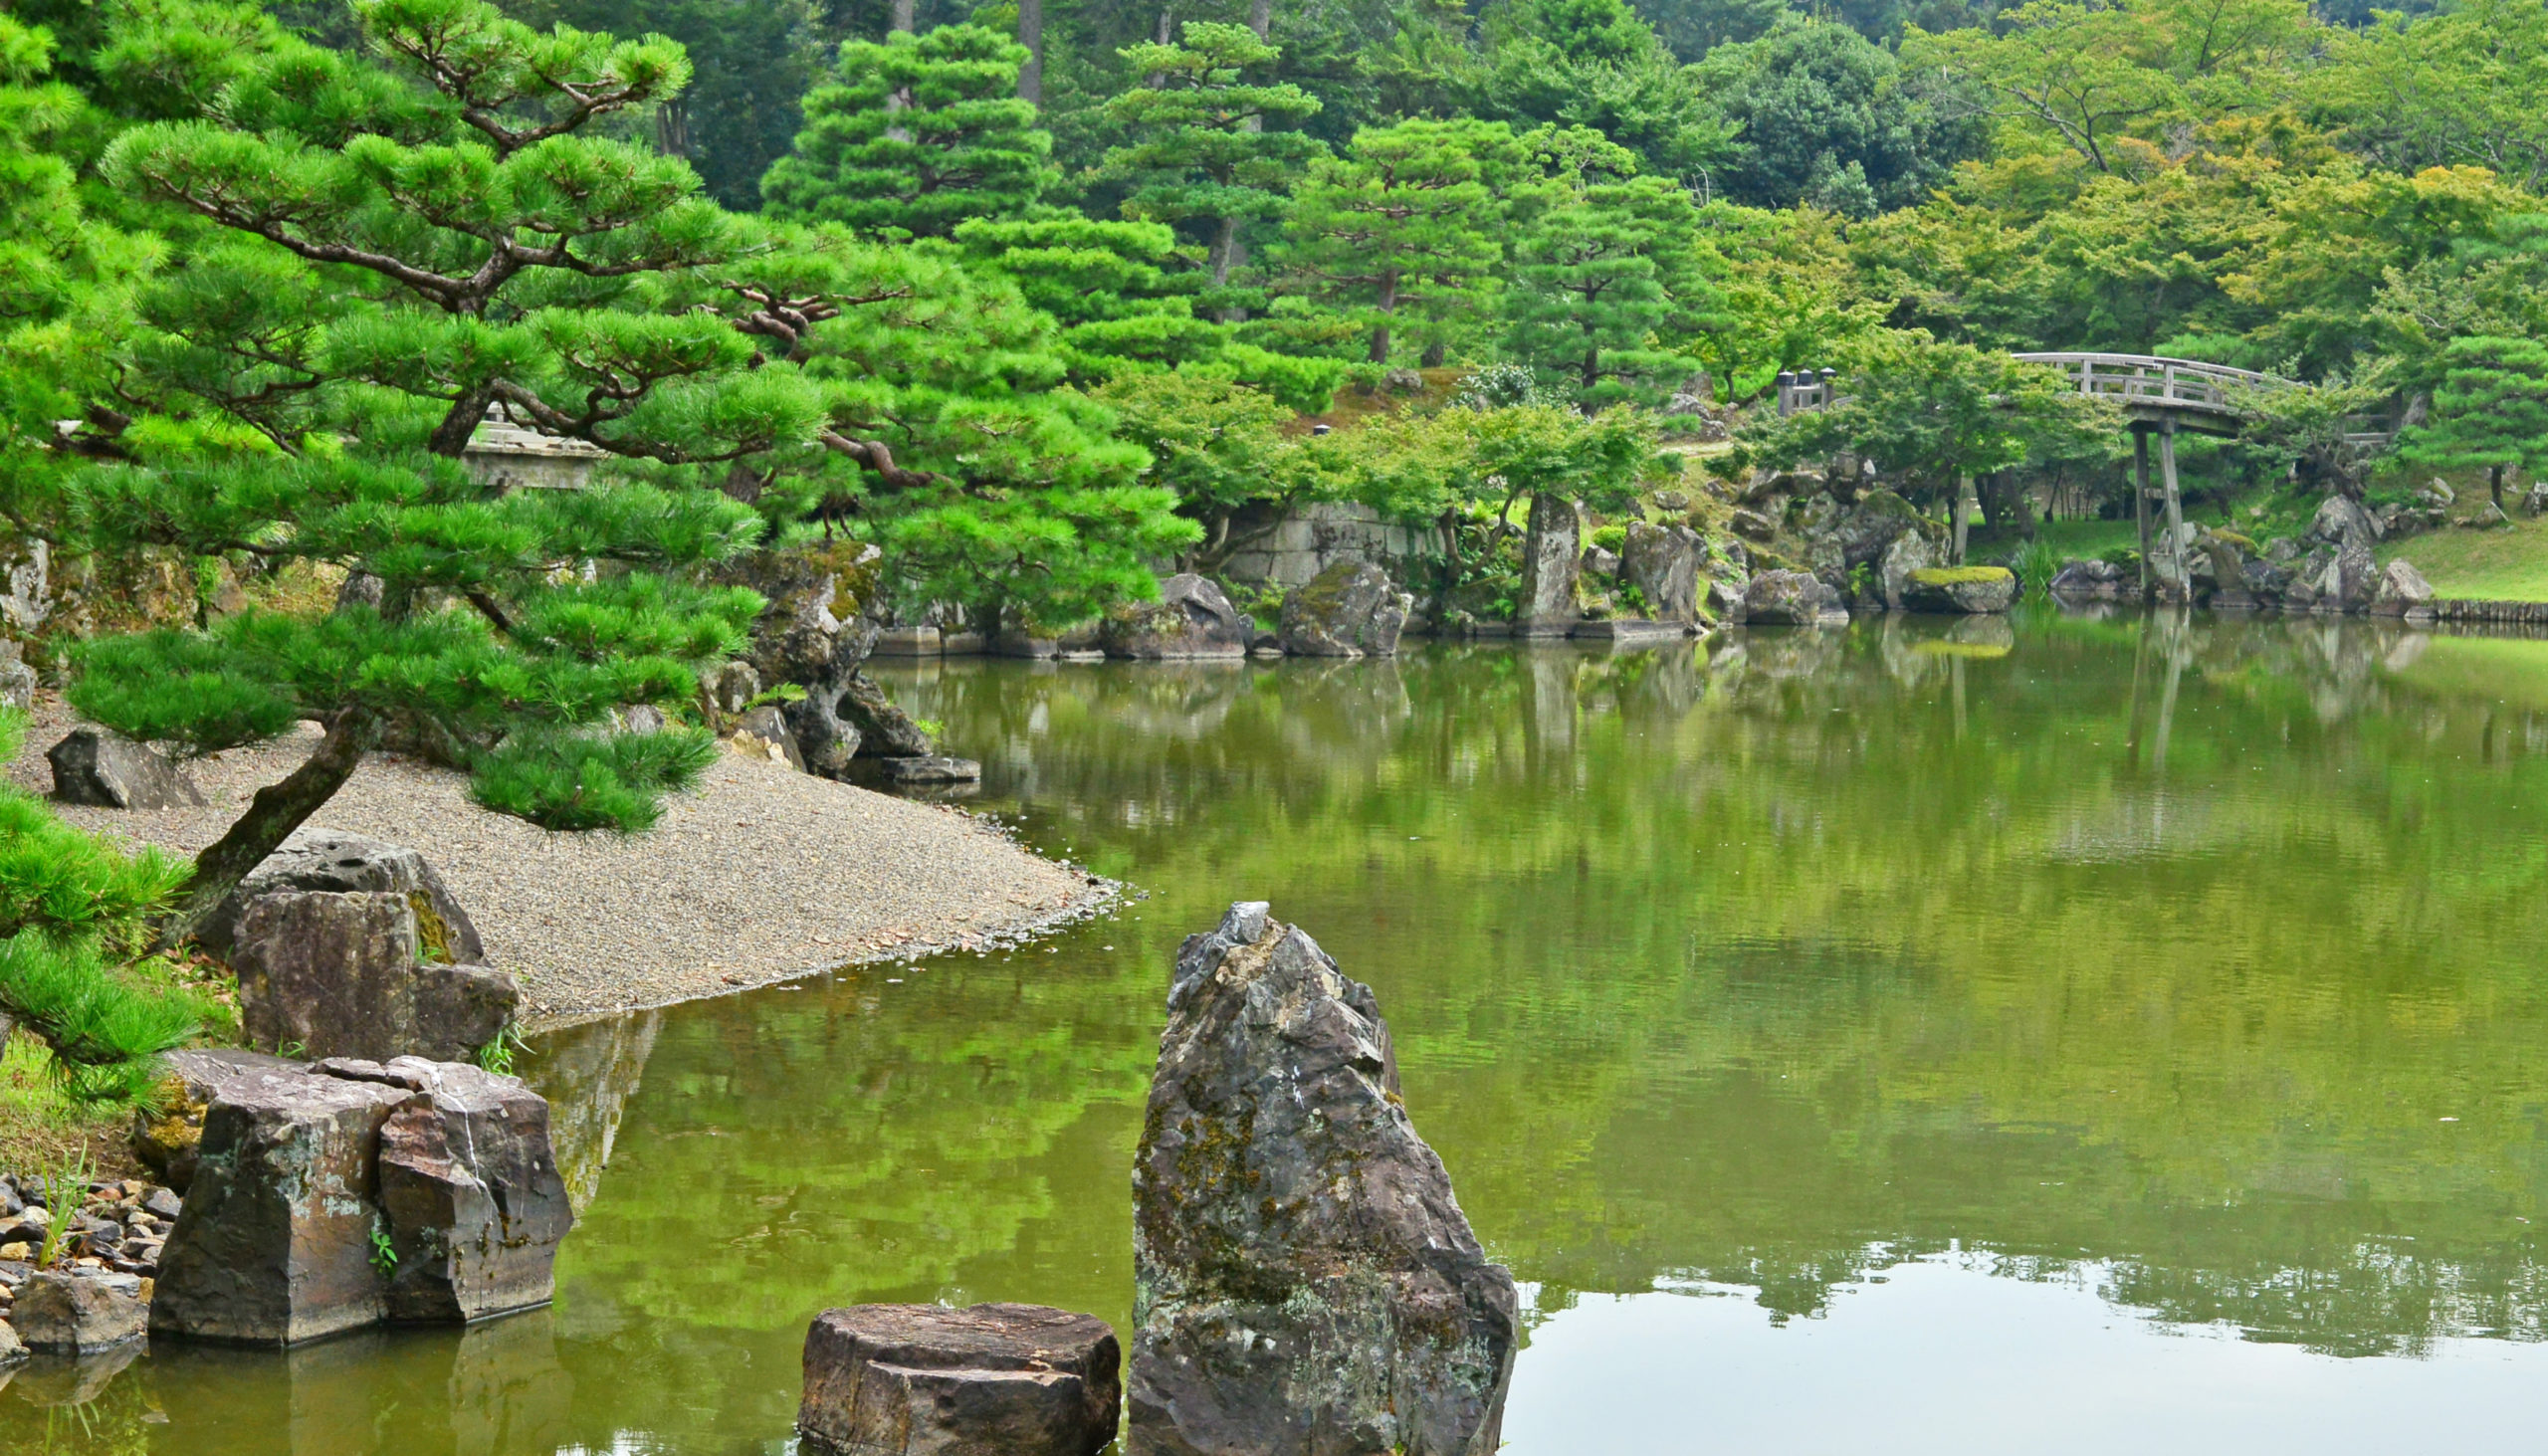 Large rocks at Genkyuen Garden in Shiga, Japan